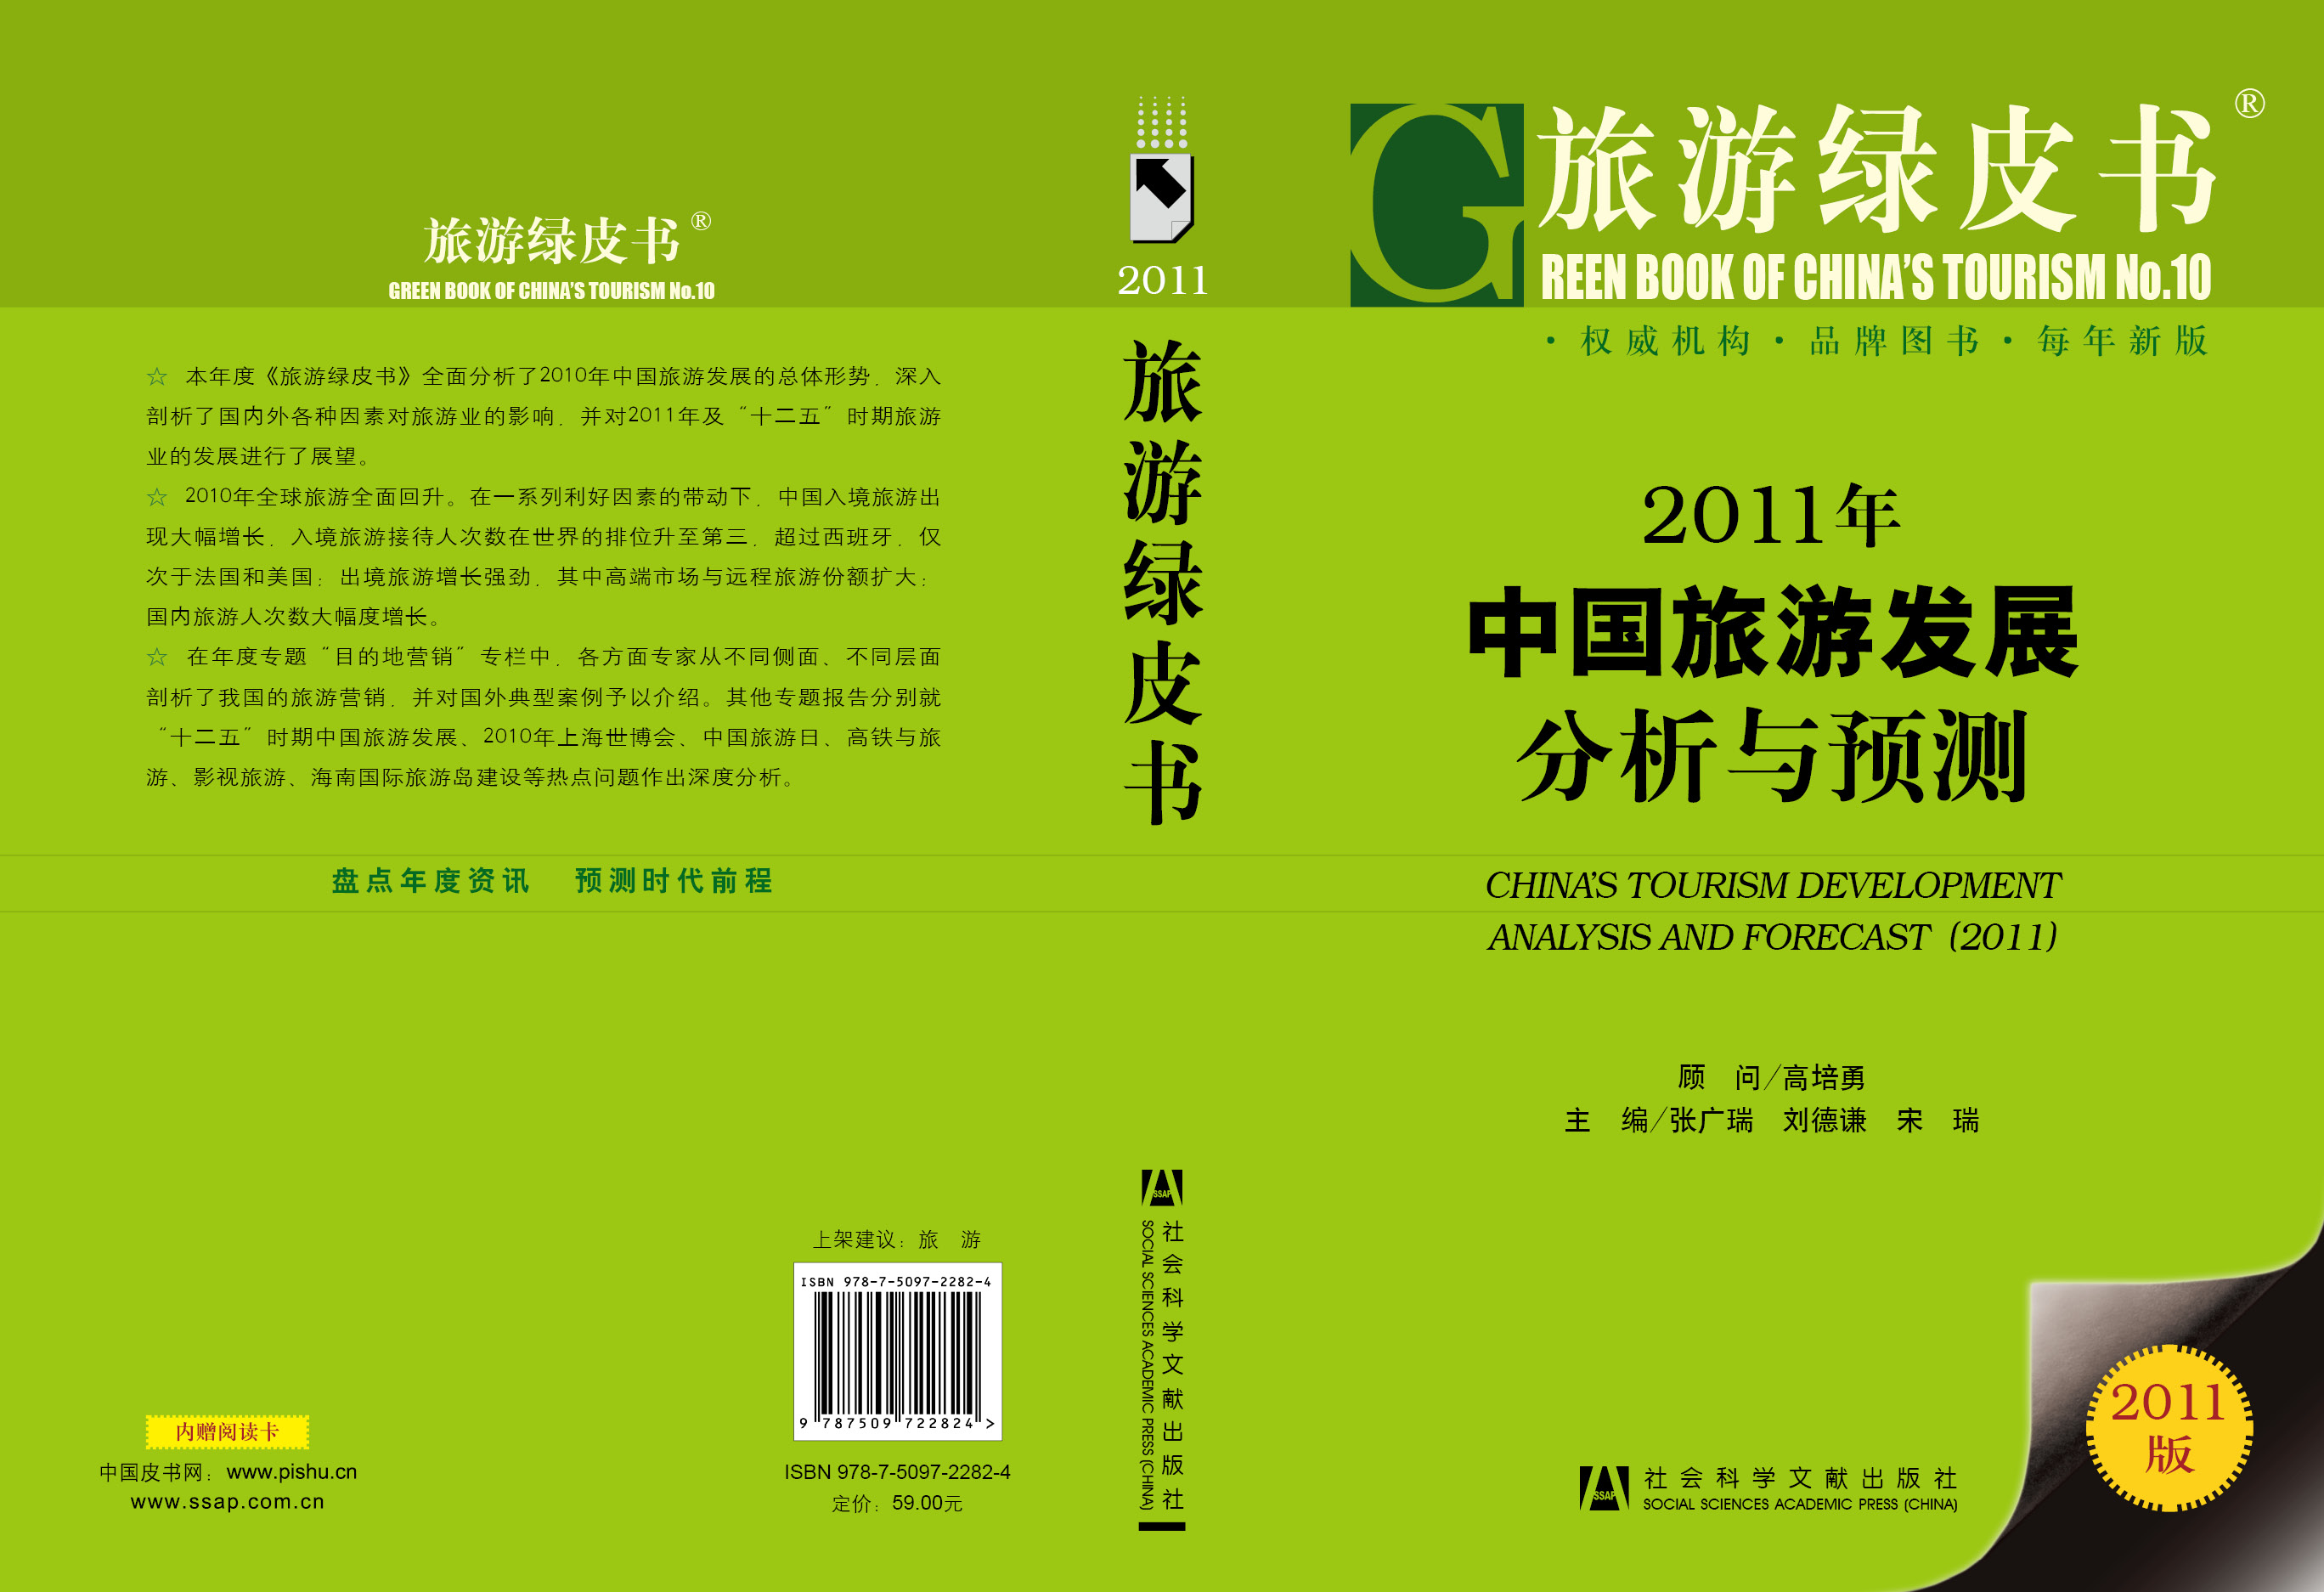 2011年中国旅游发展分析与预测